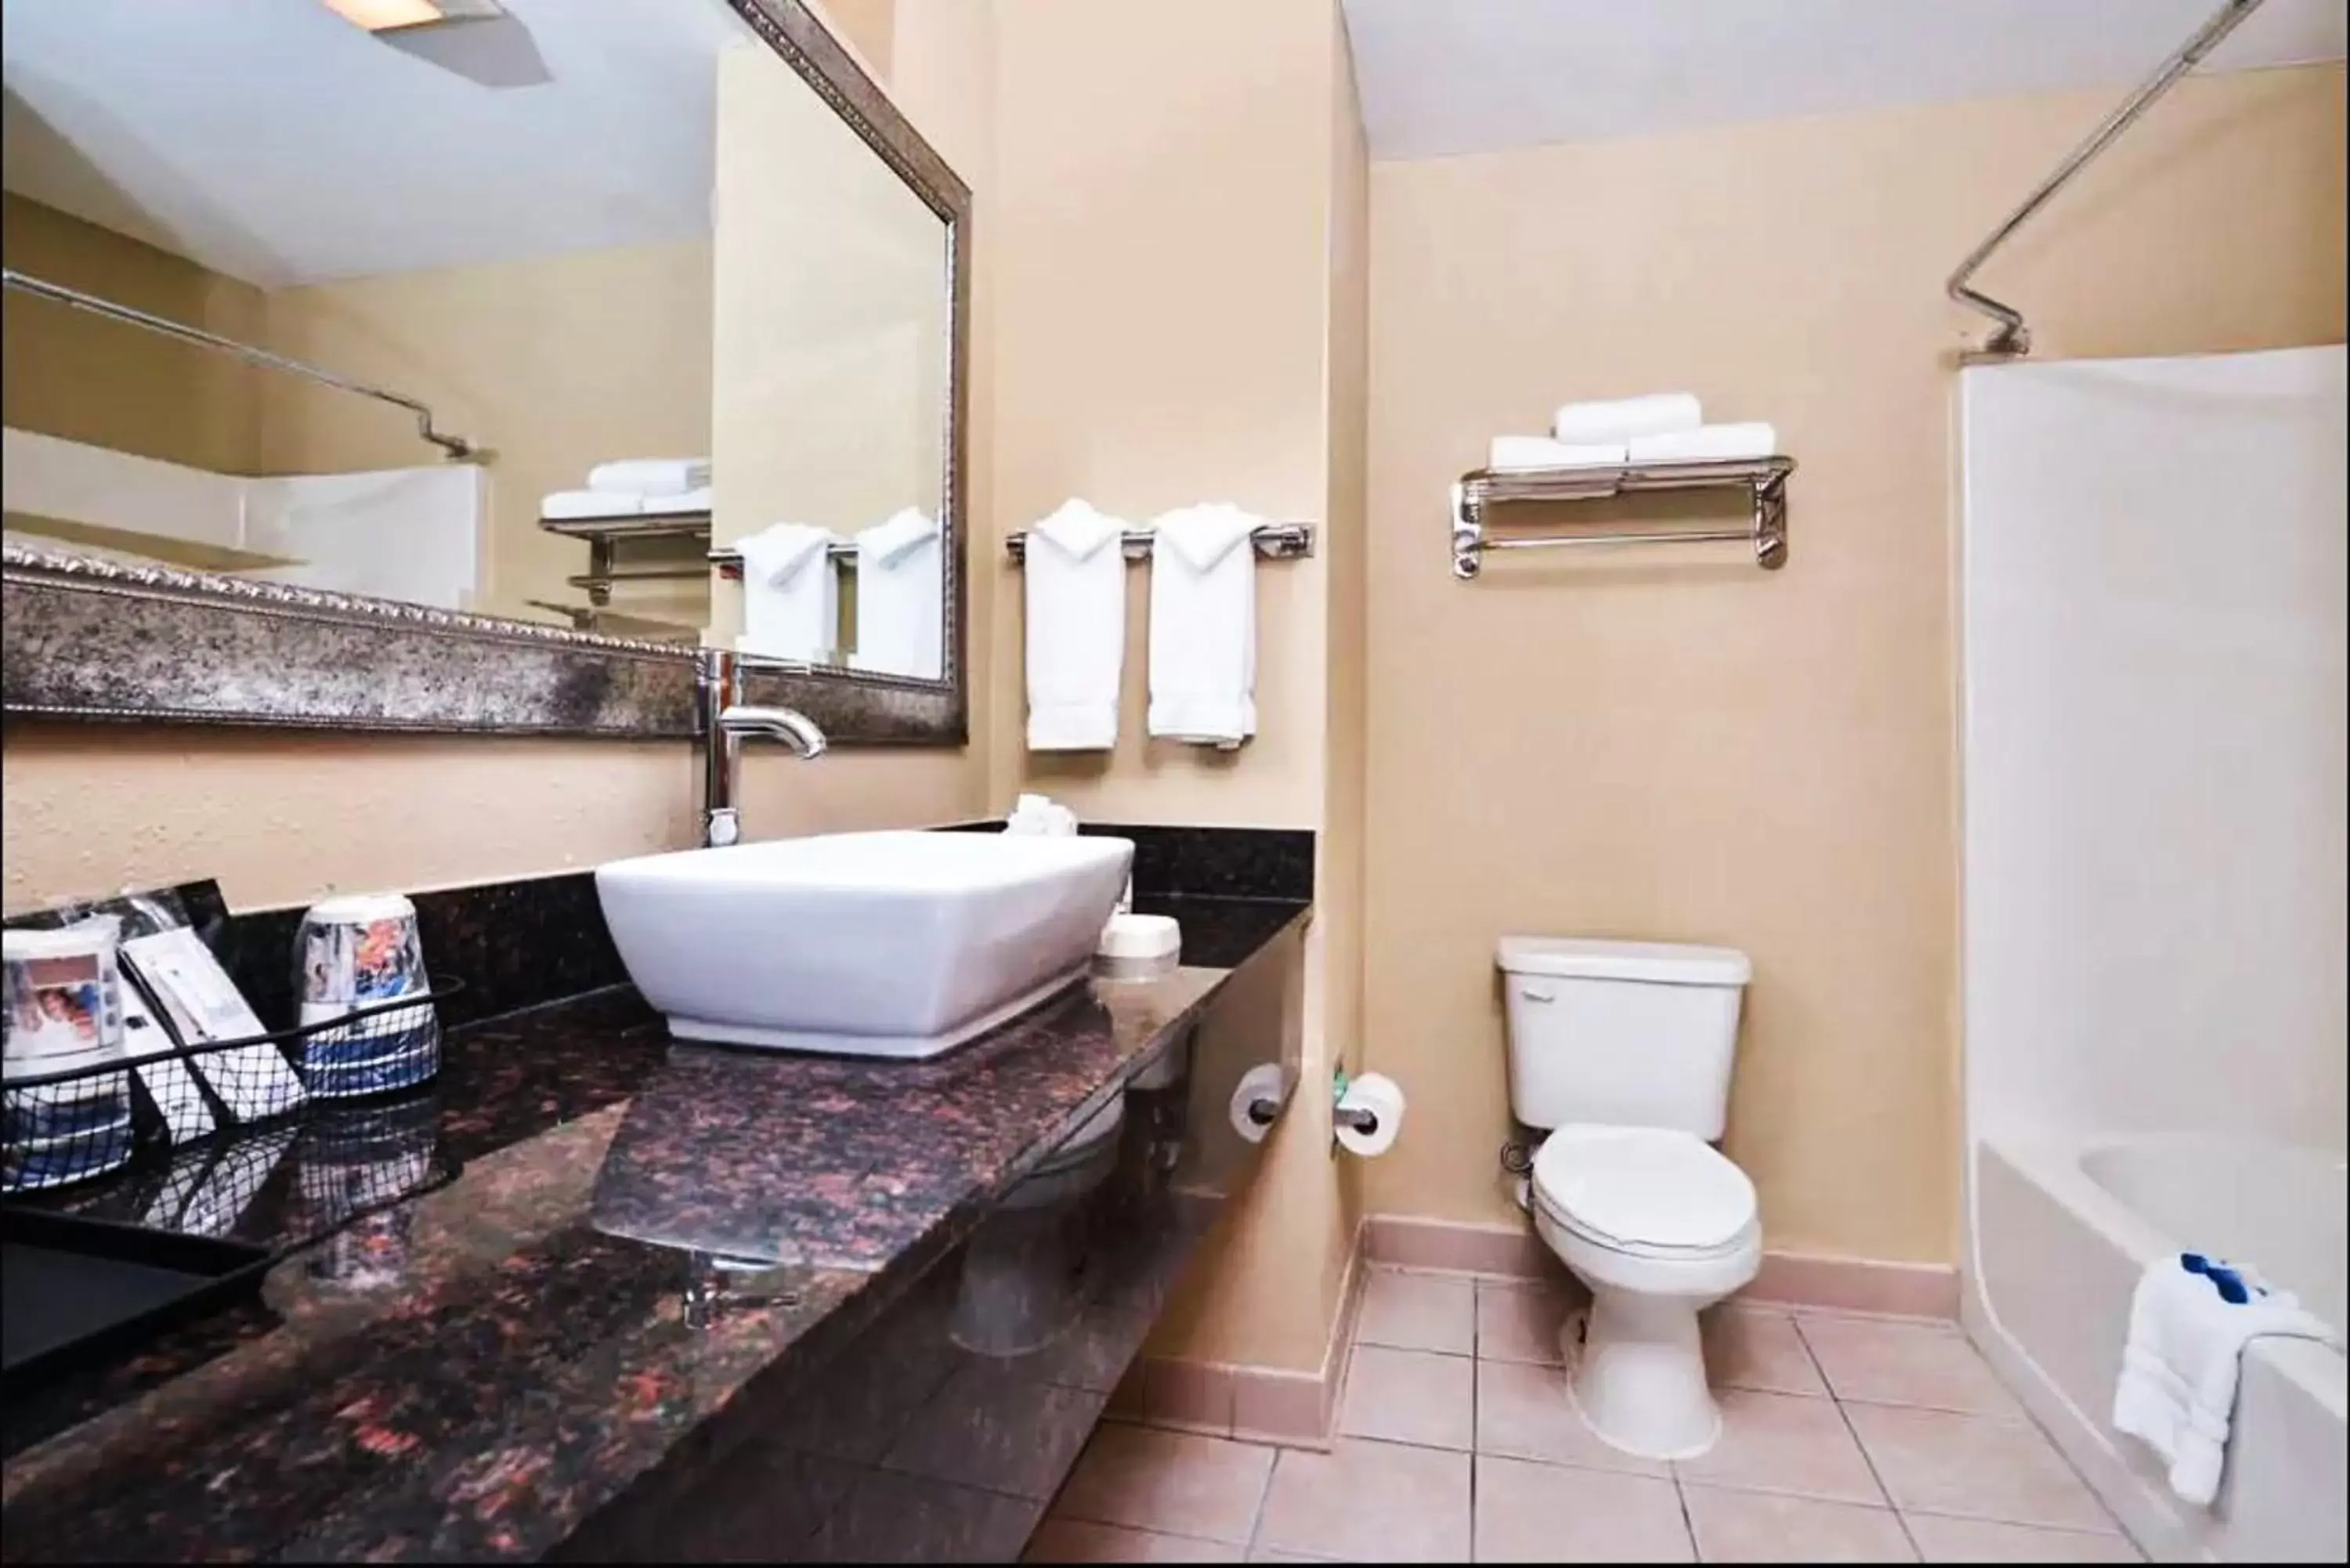 Toilet, Bathroom in Best Western Plus Savannah Airport Inn and Suites